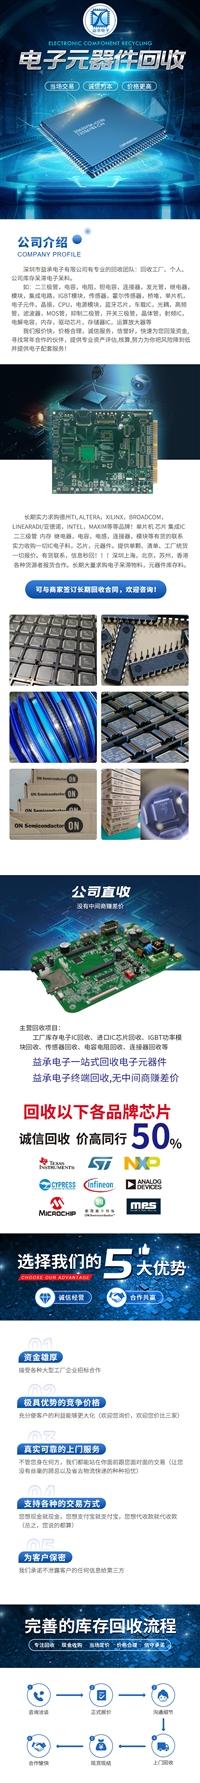 江苏工业园回收传感器/IGBT模块  回收电子工厂处理清单